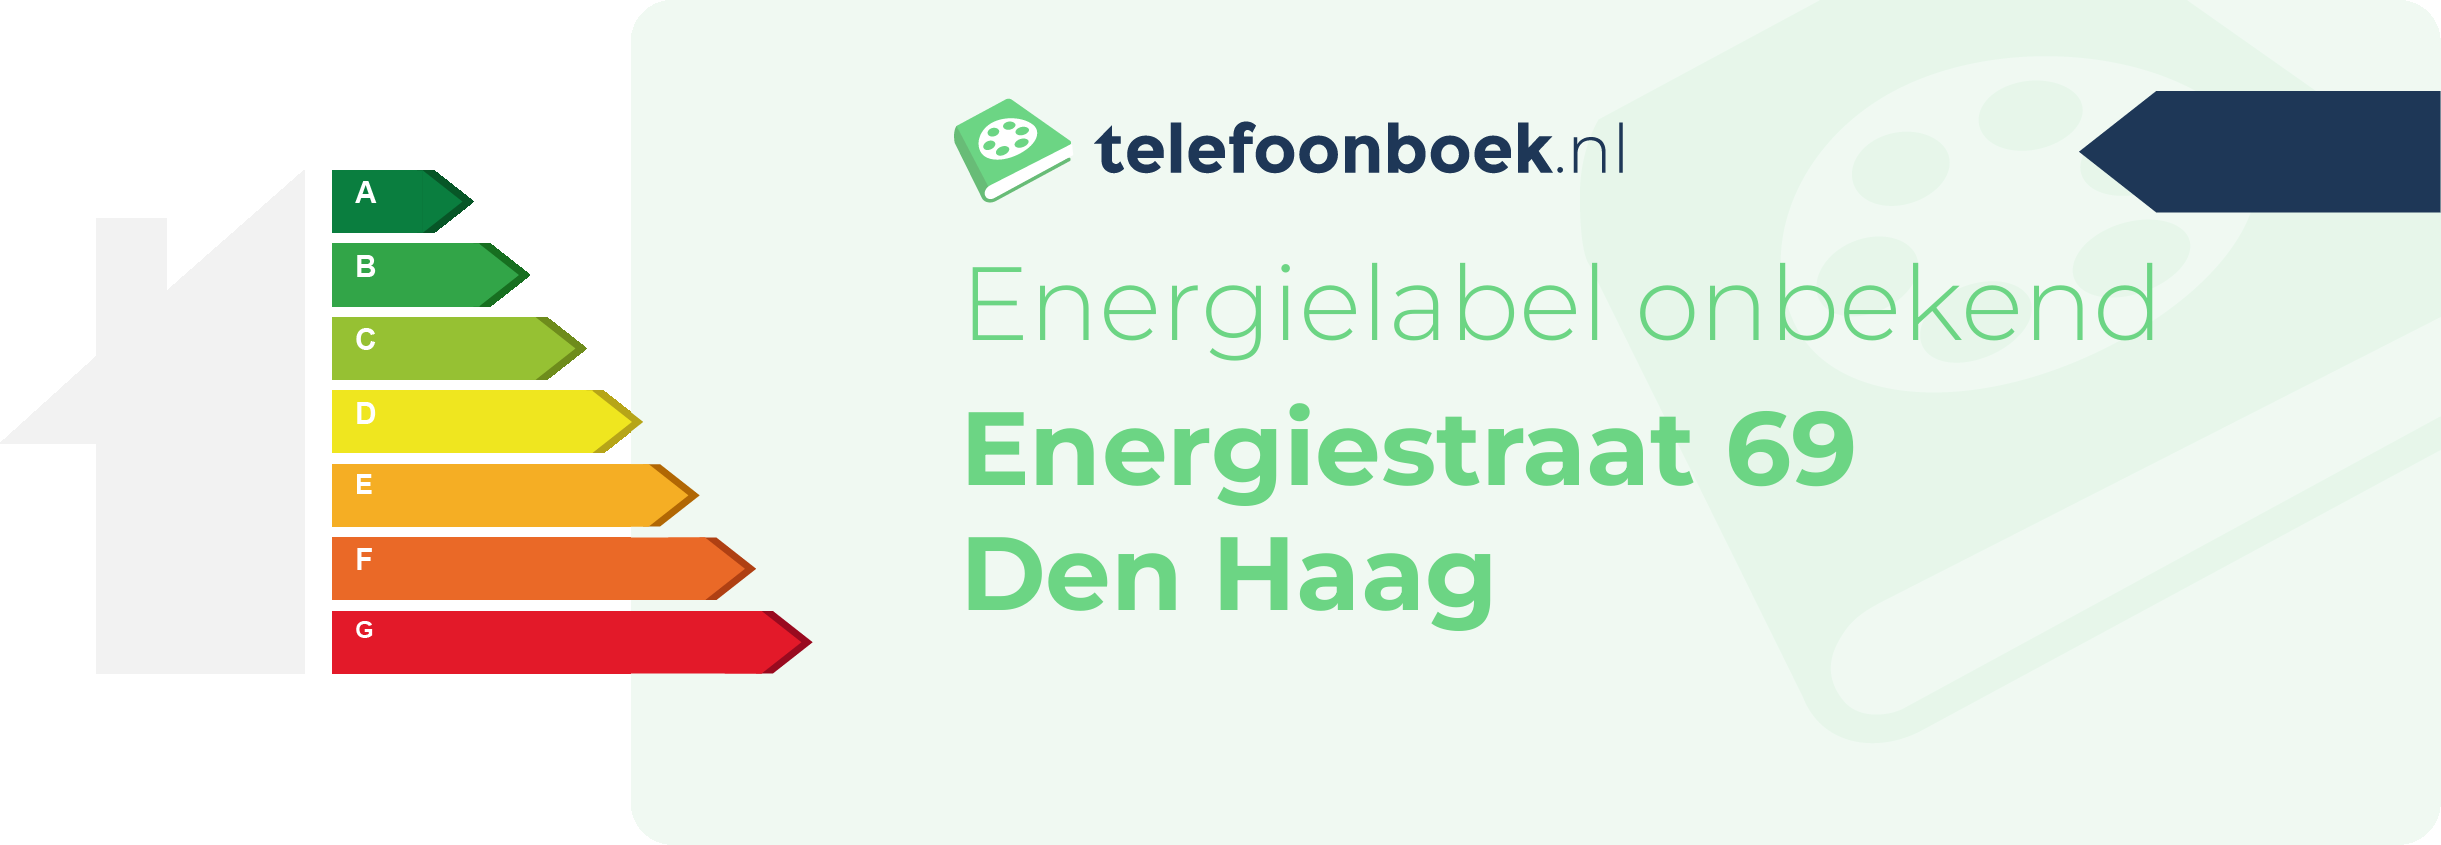 Energielabel Energiestraat 69 Den Haag